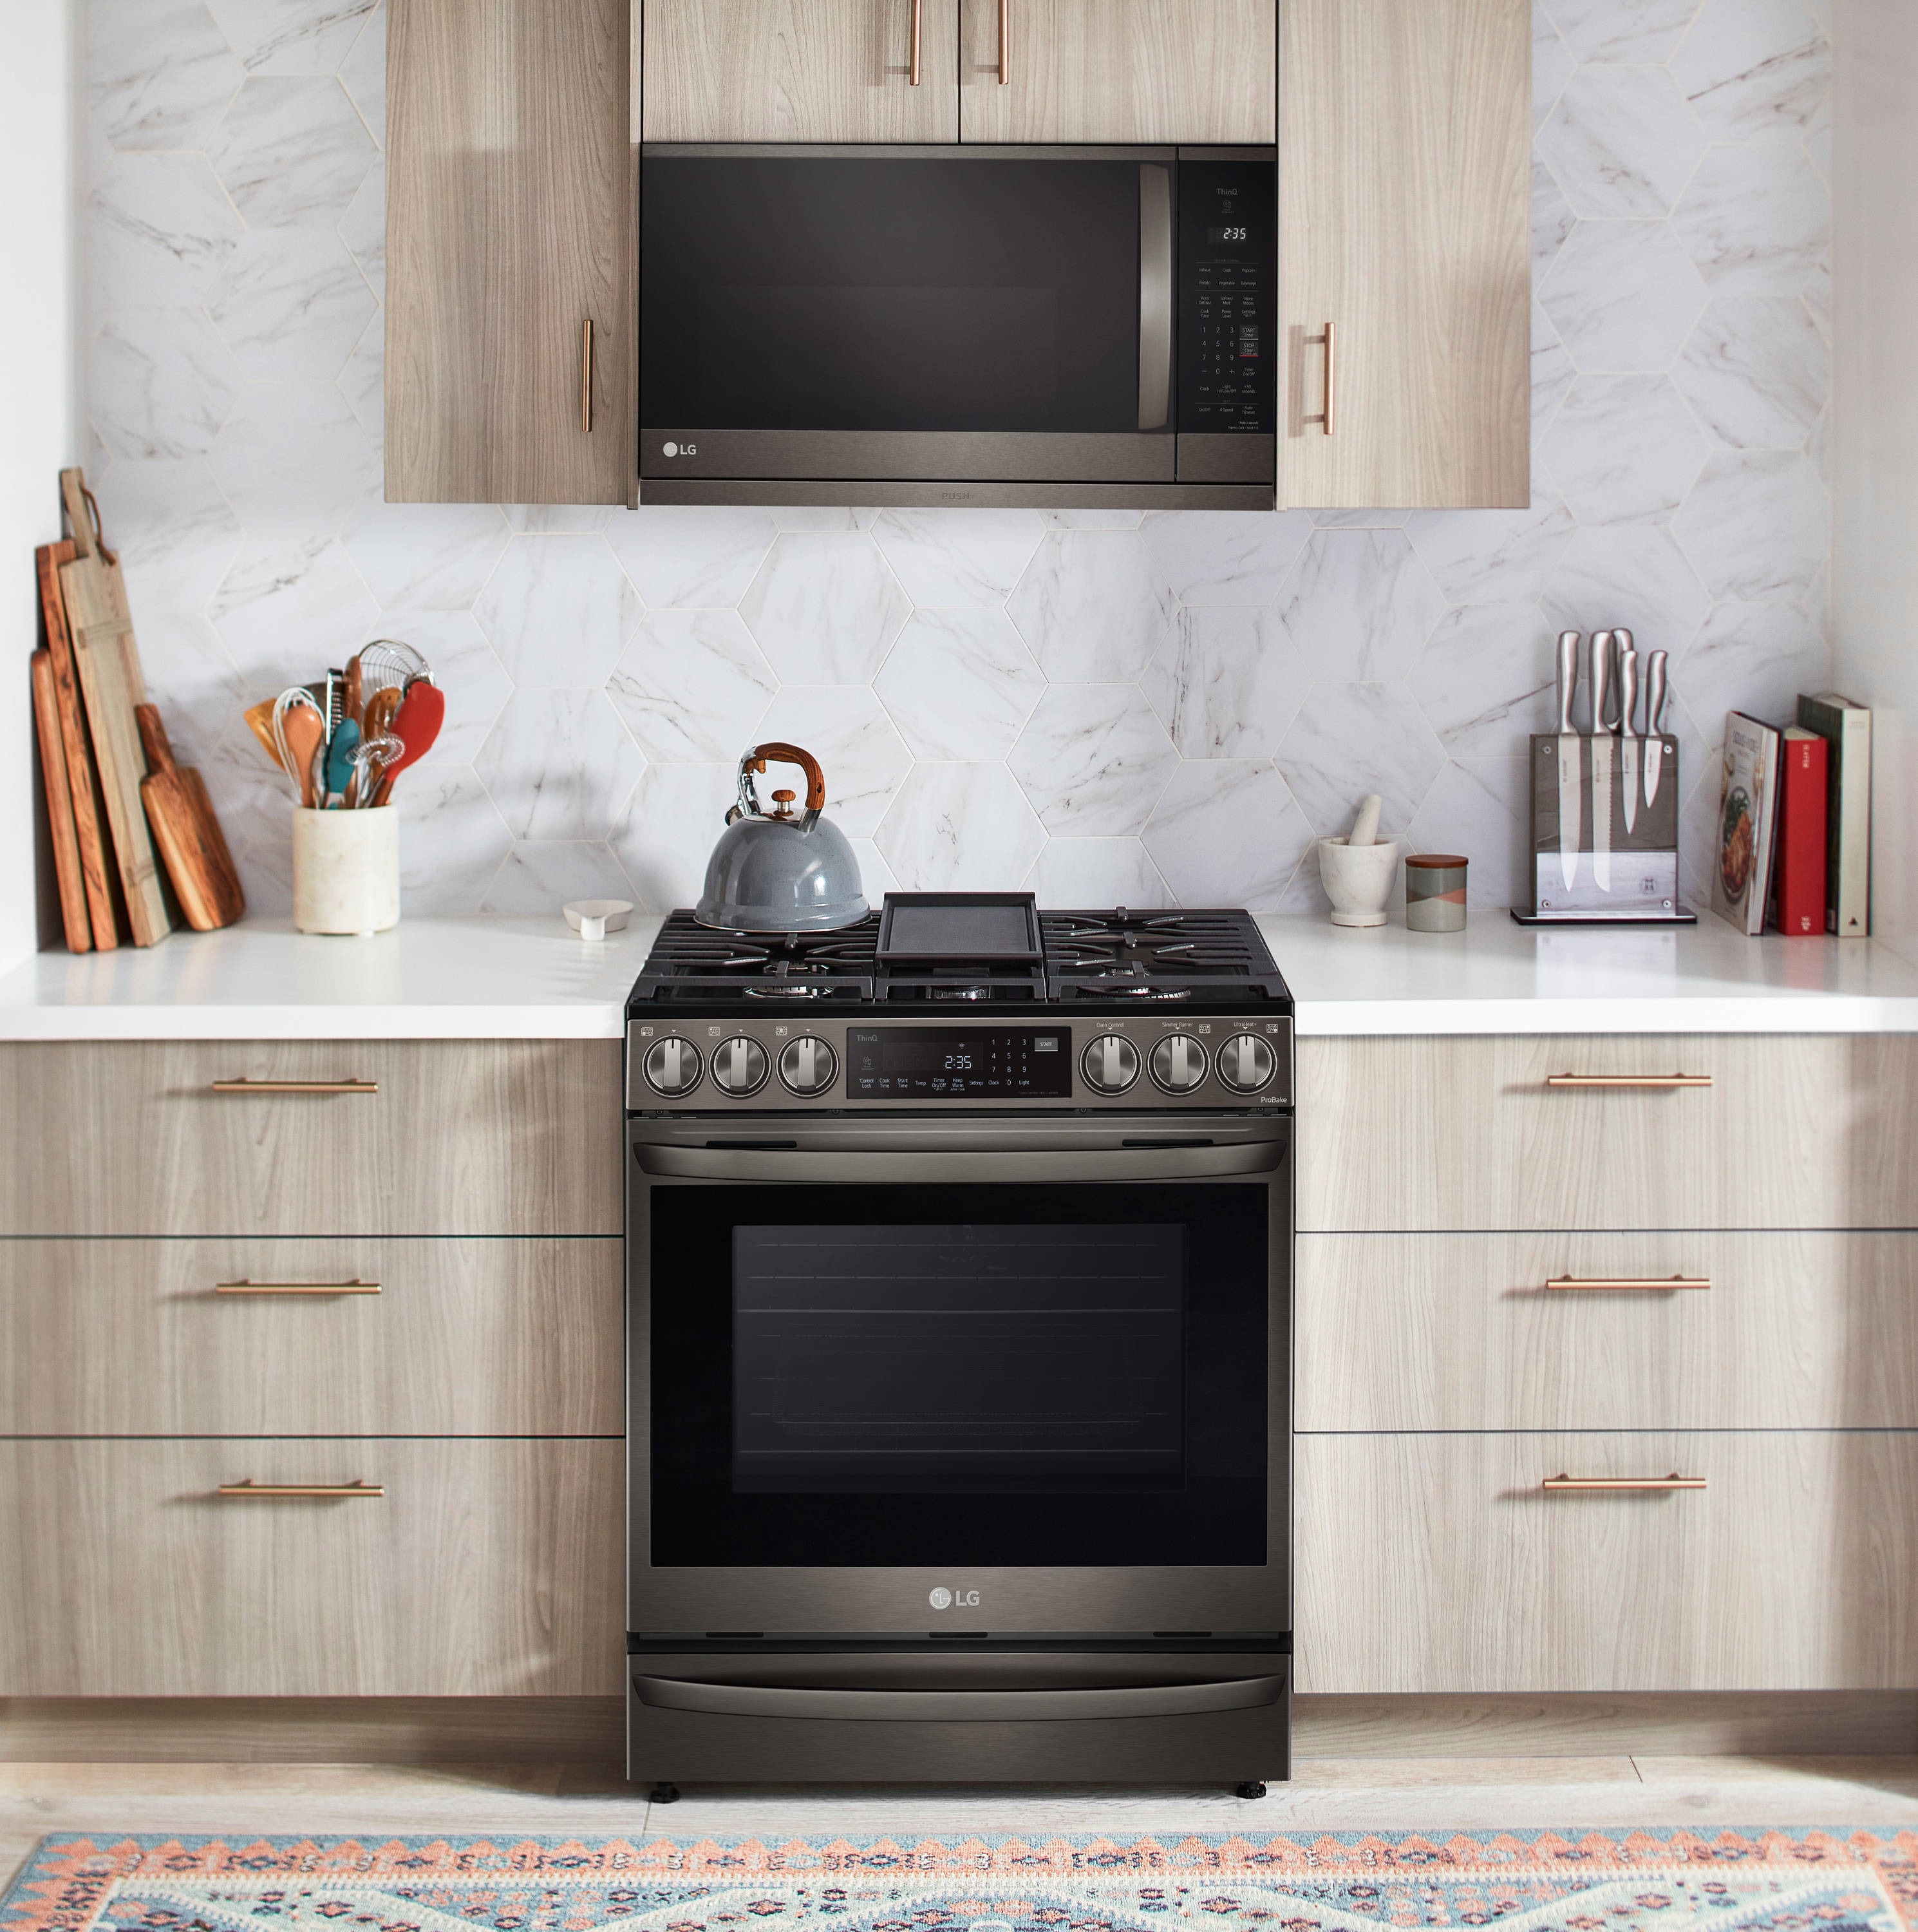 LG Kitchen Appliances: Cooking Appliances